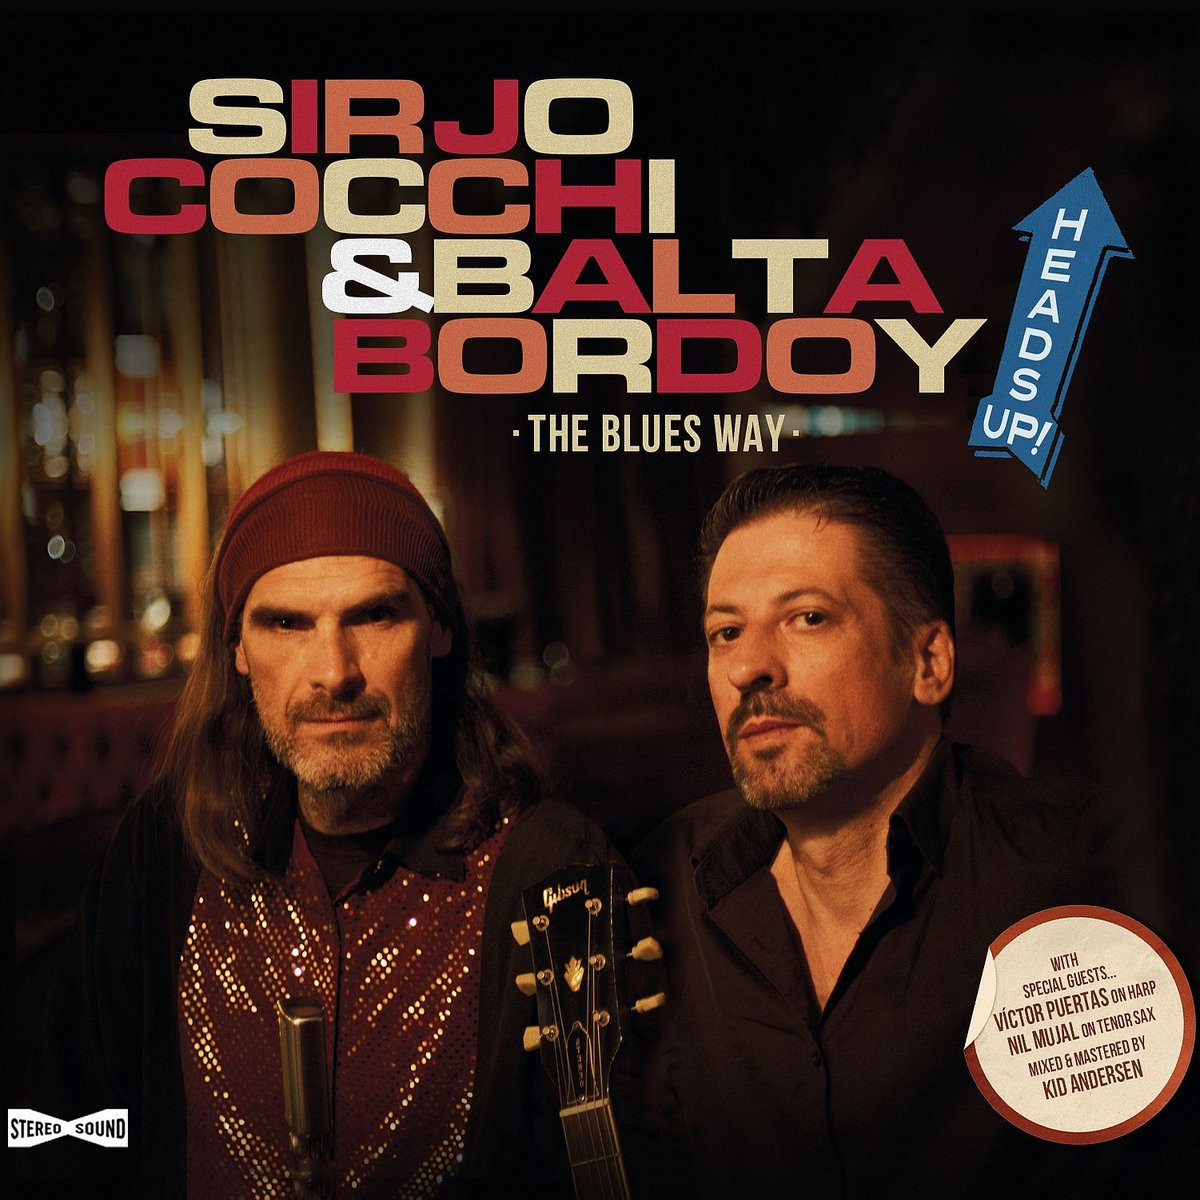 SirJo Cocchi & Balta Bordoy- Heads Up